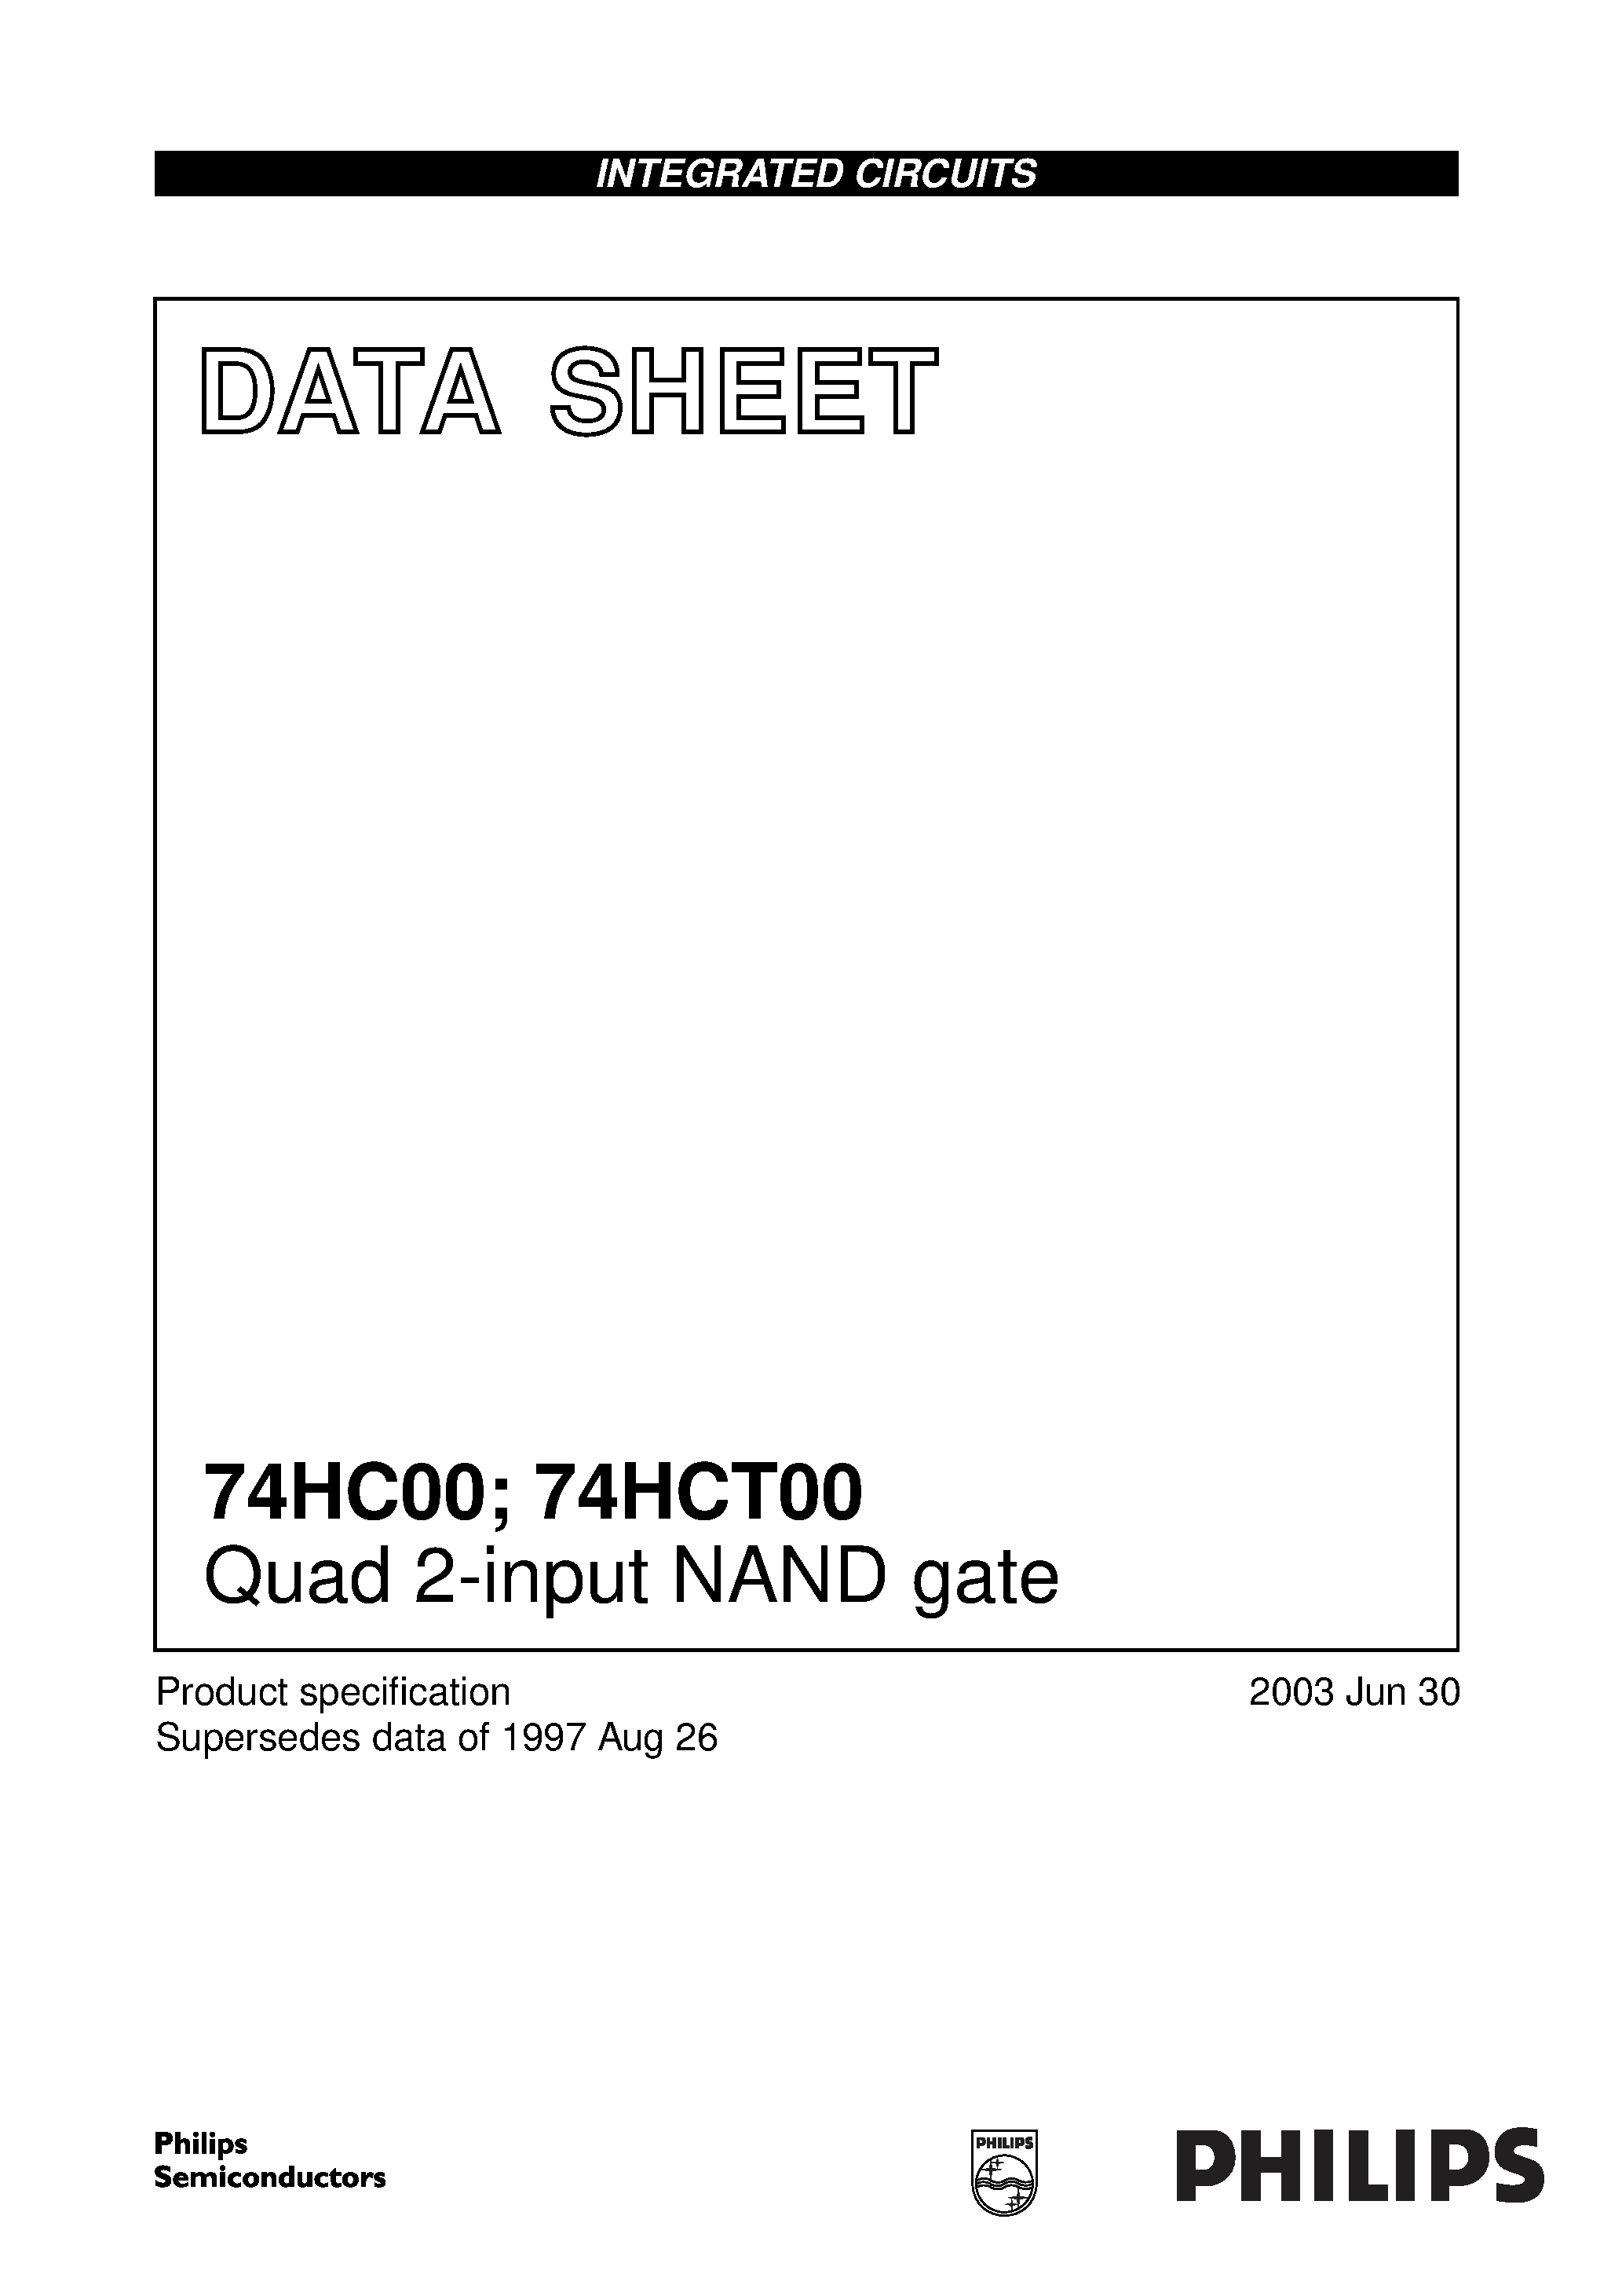 Даташит 74HC00 - Quad 2-input NAND gate страница 1